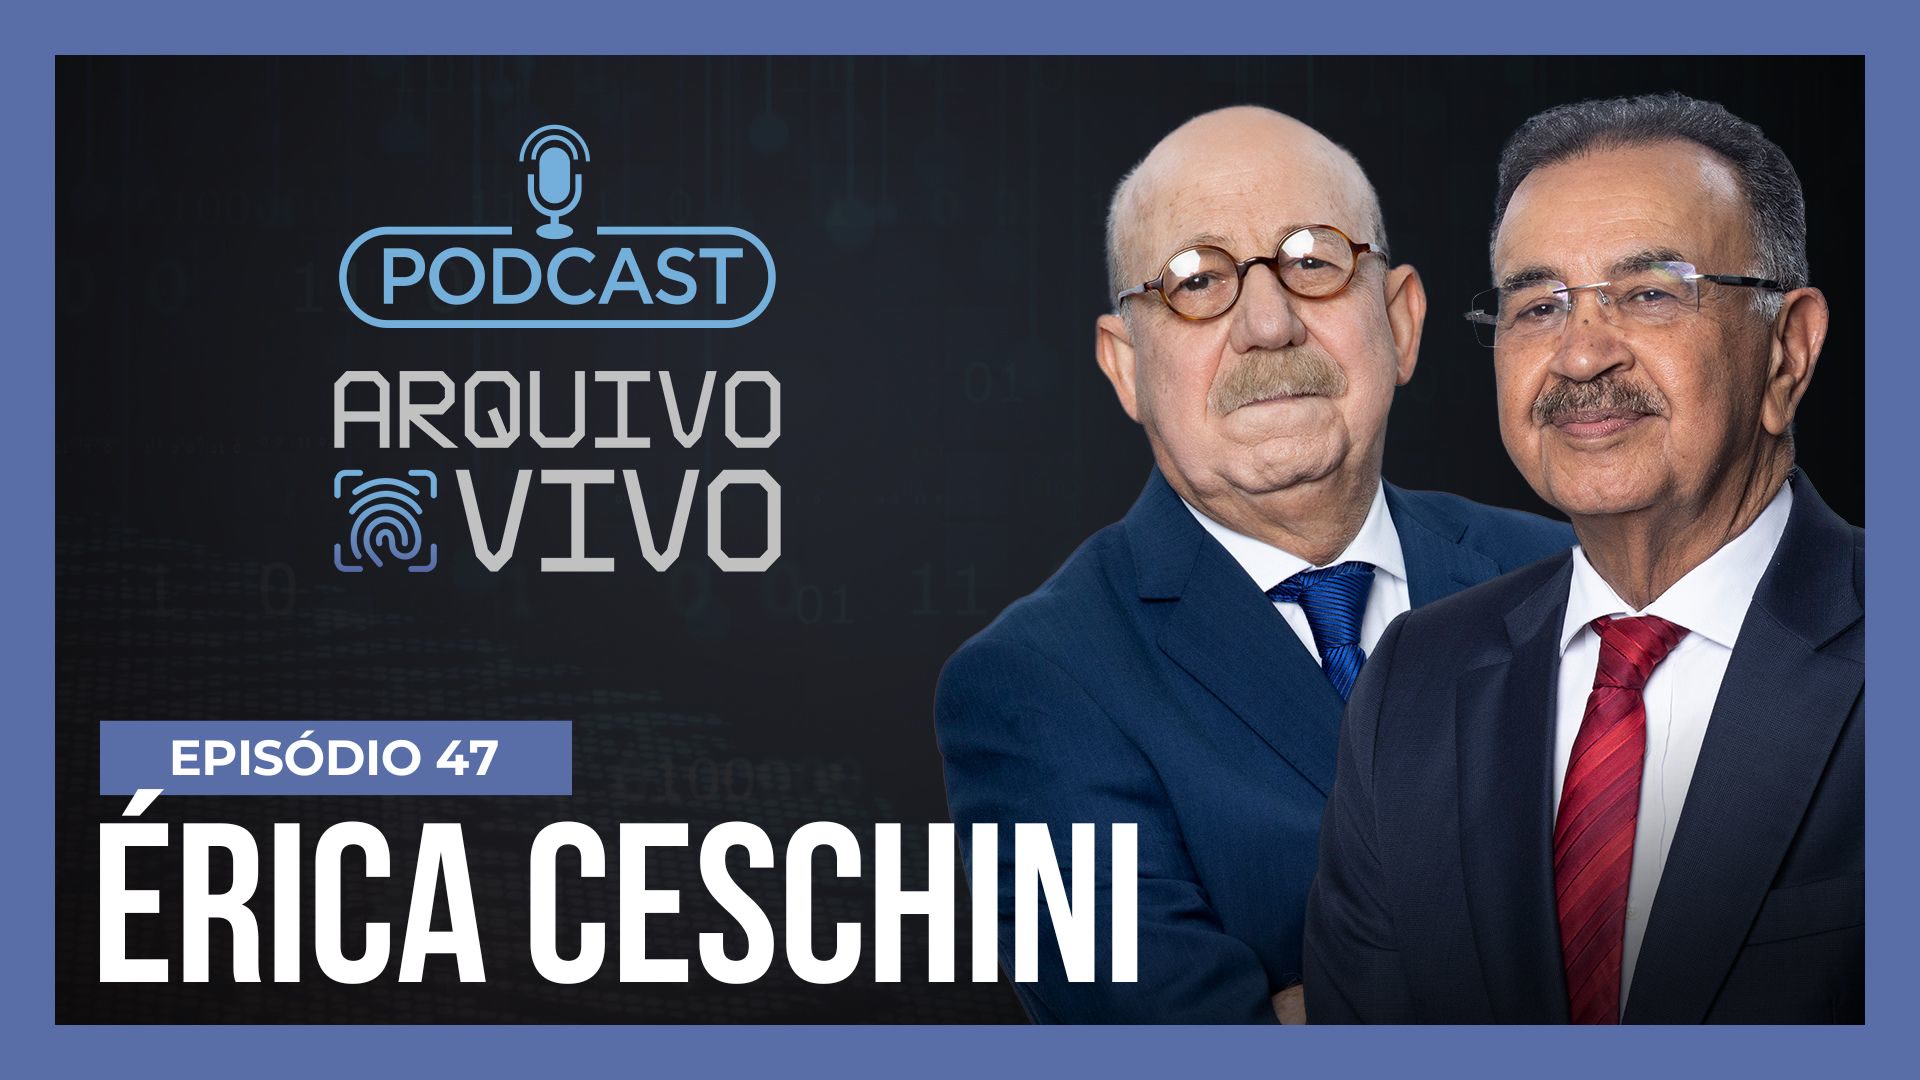 Vídeo: Podcast Arquivo Vivo – O assassinato de Érica Ceschini por uma discussão sobre futebol – Ep. 47